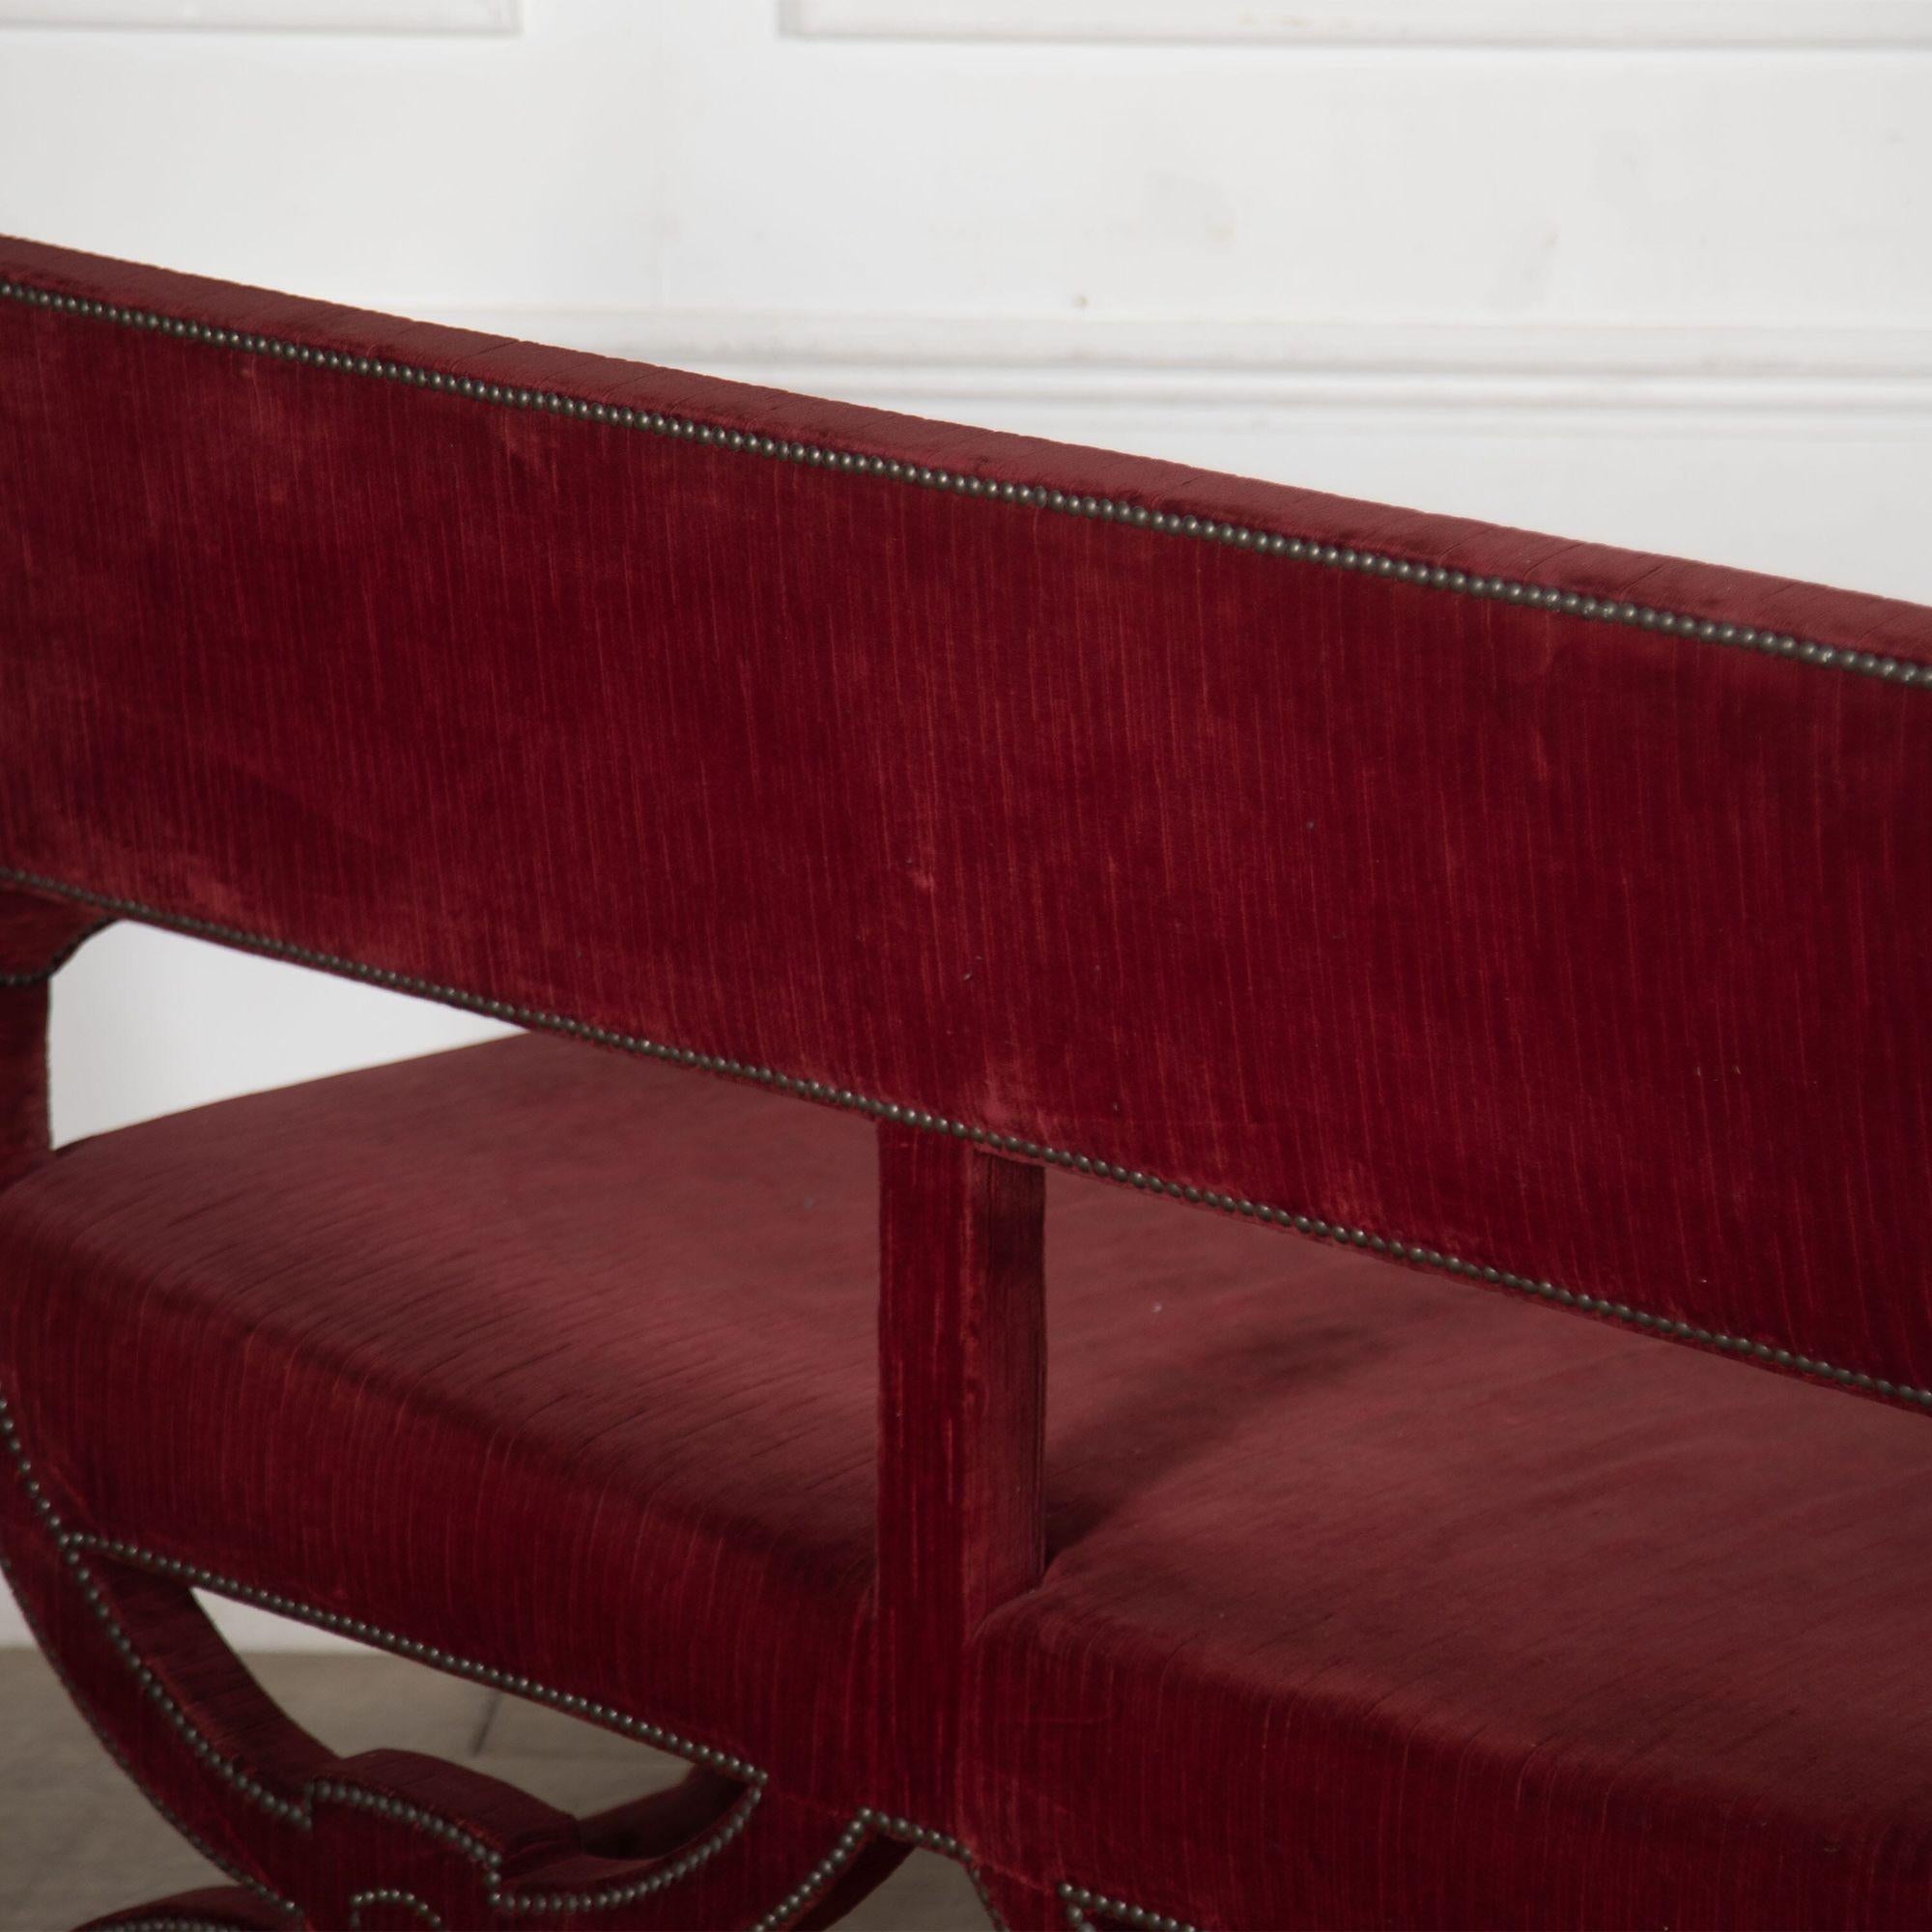 Canapé en velours rouge français du 20ème siècle dans son tissu d'origine. 
Circa 1900. 